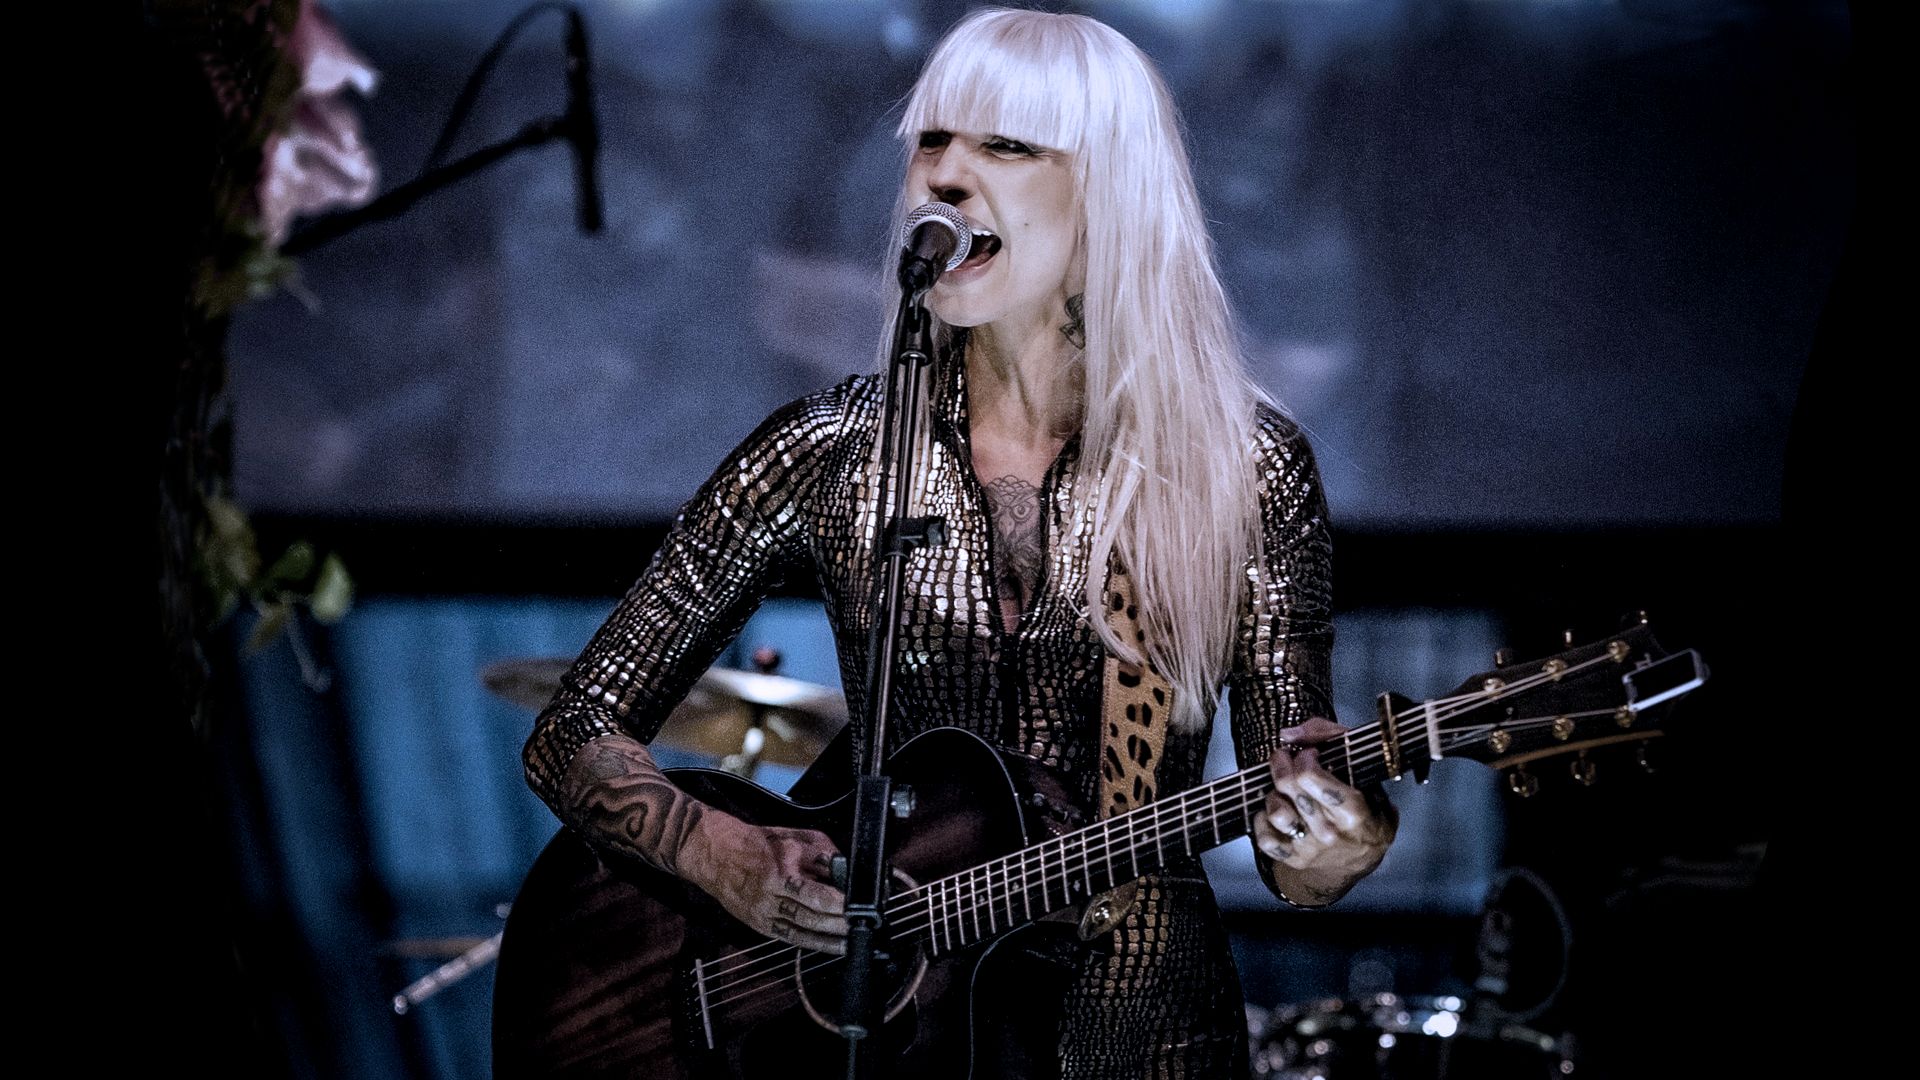 Linda Varg playing guitar live on stage